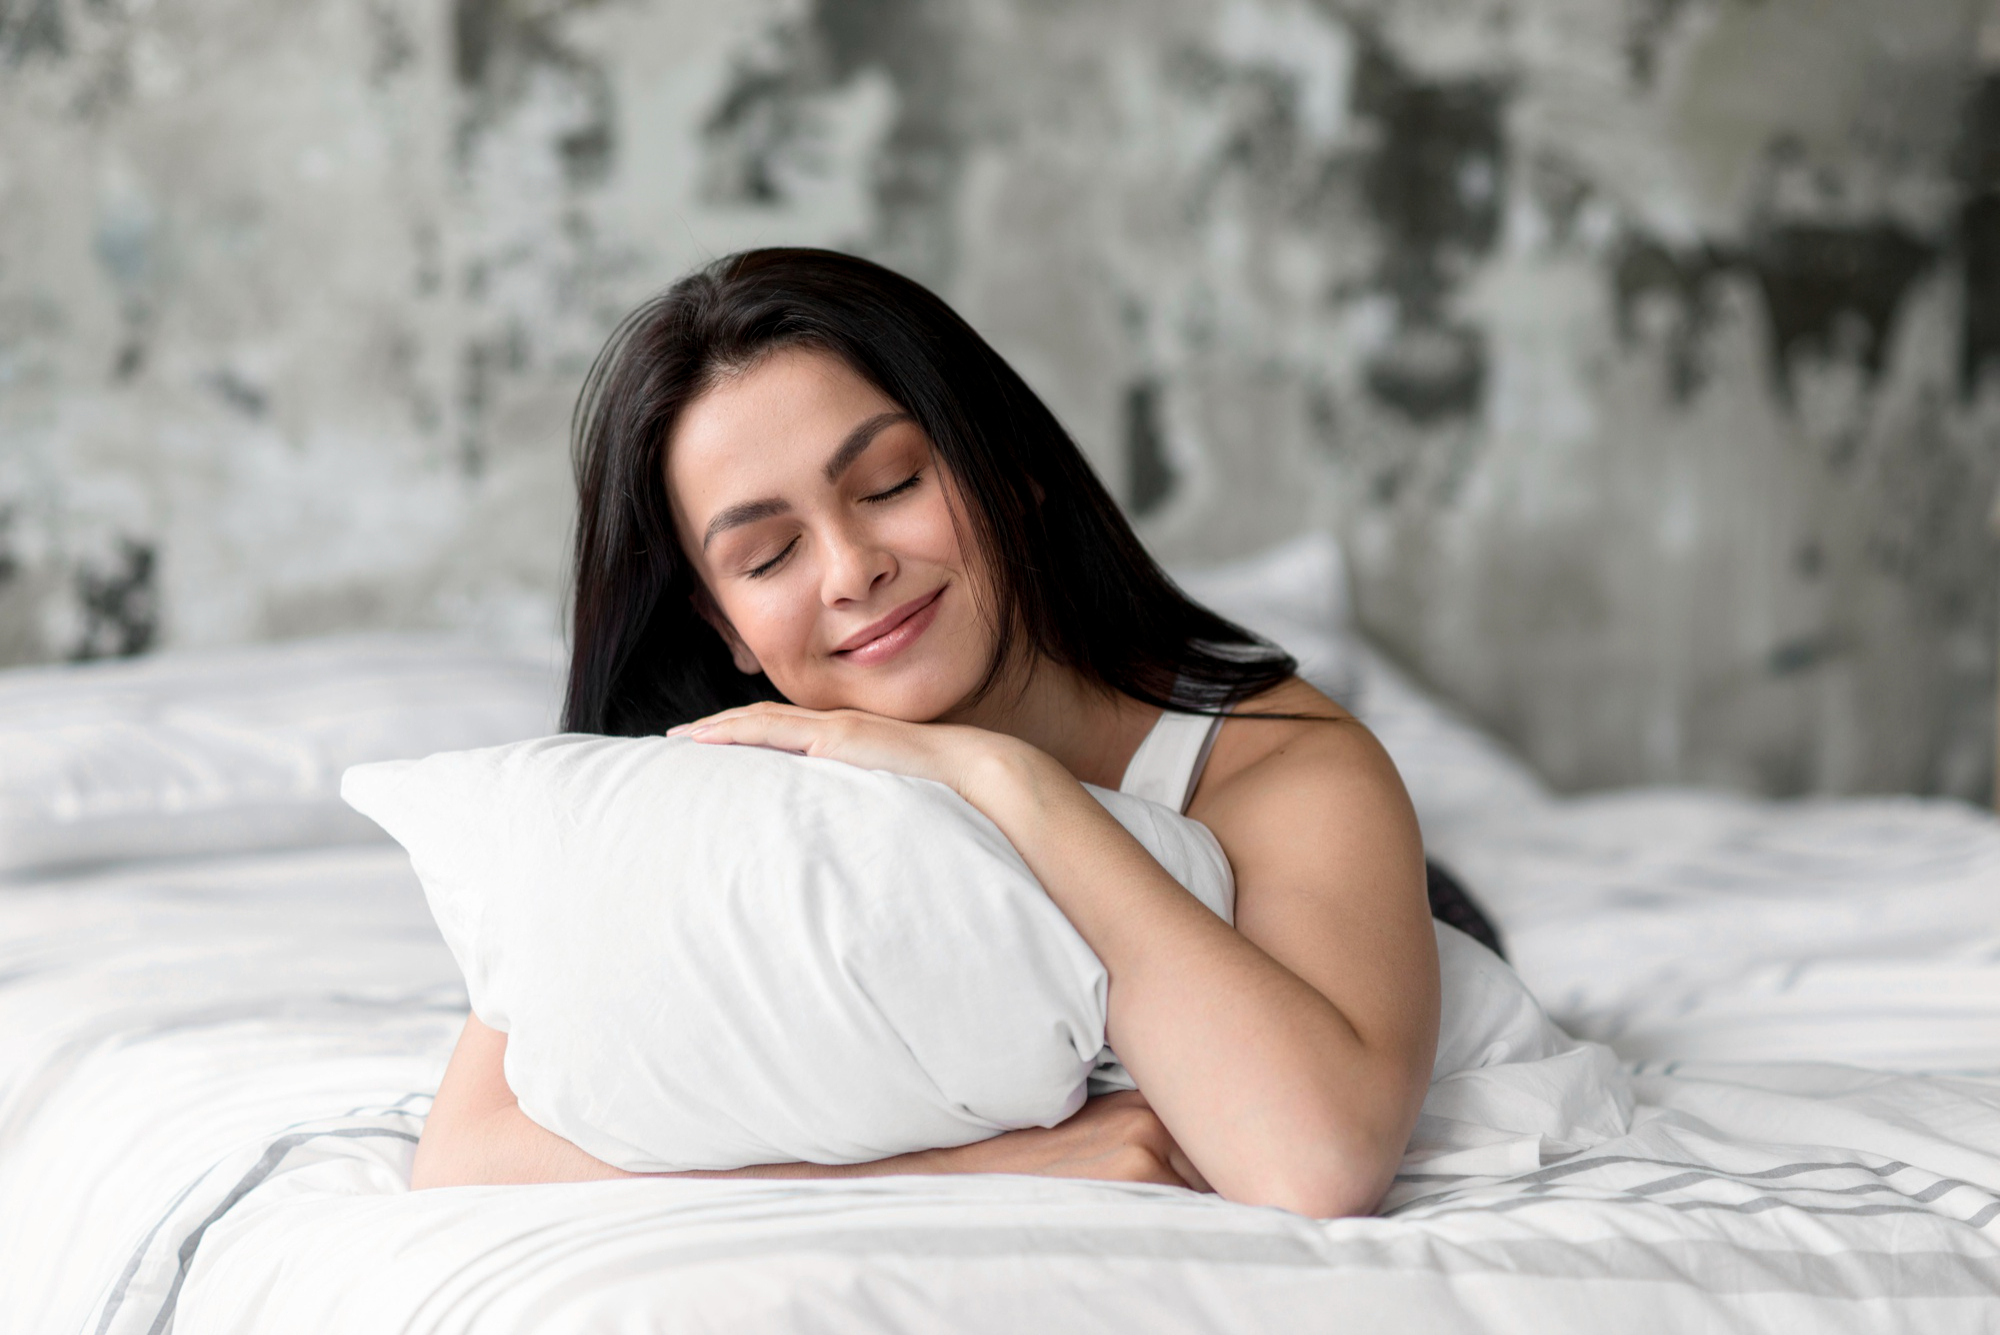 Dormir bem não é apenas essencial para a saúde física e mental, mas também desempenha um papel importante na manutenção da beleza da pele, dos cabelos e até mesmo do humor / GB Imagem